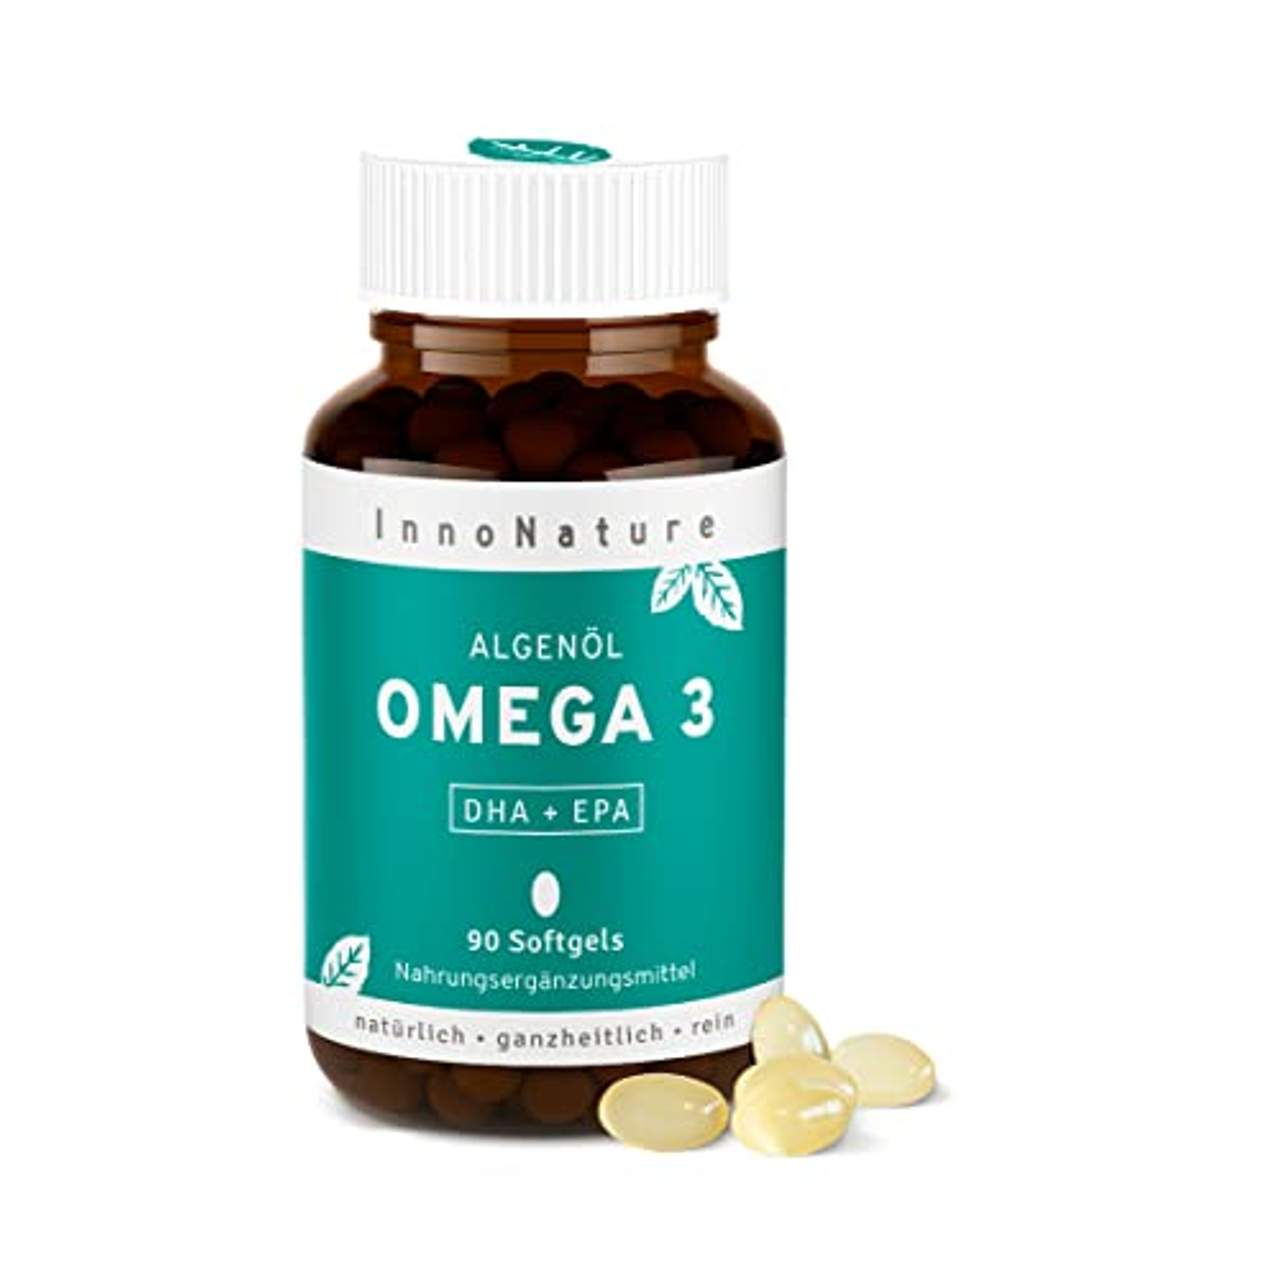 Vegan Omega 3 Kapseln aus Mikroalgenöl